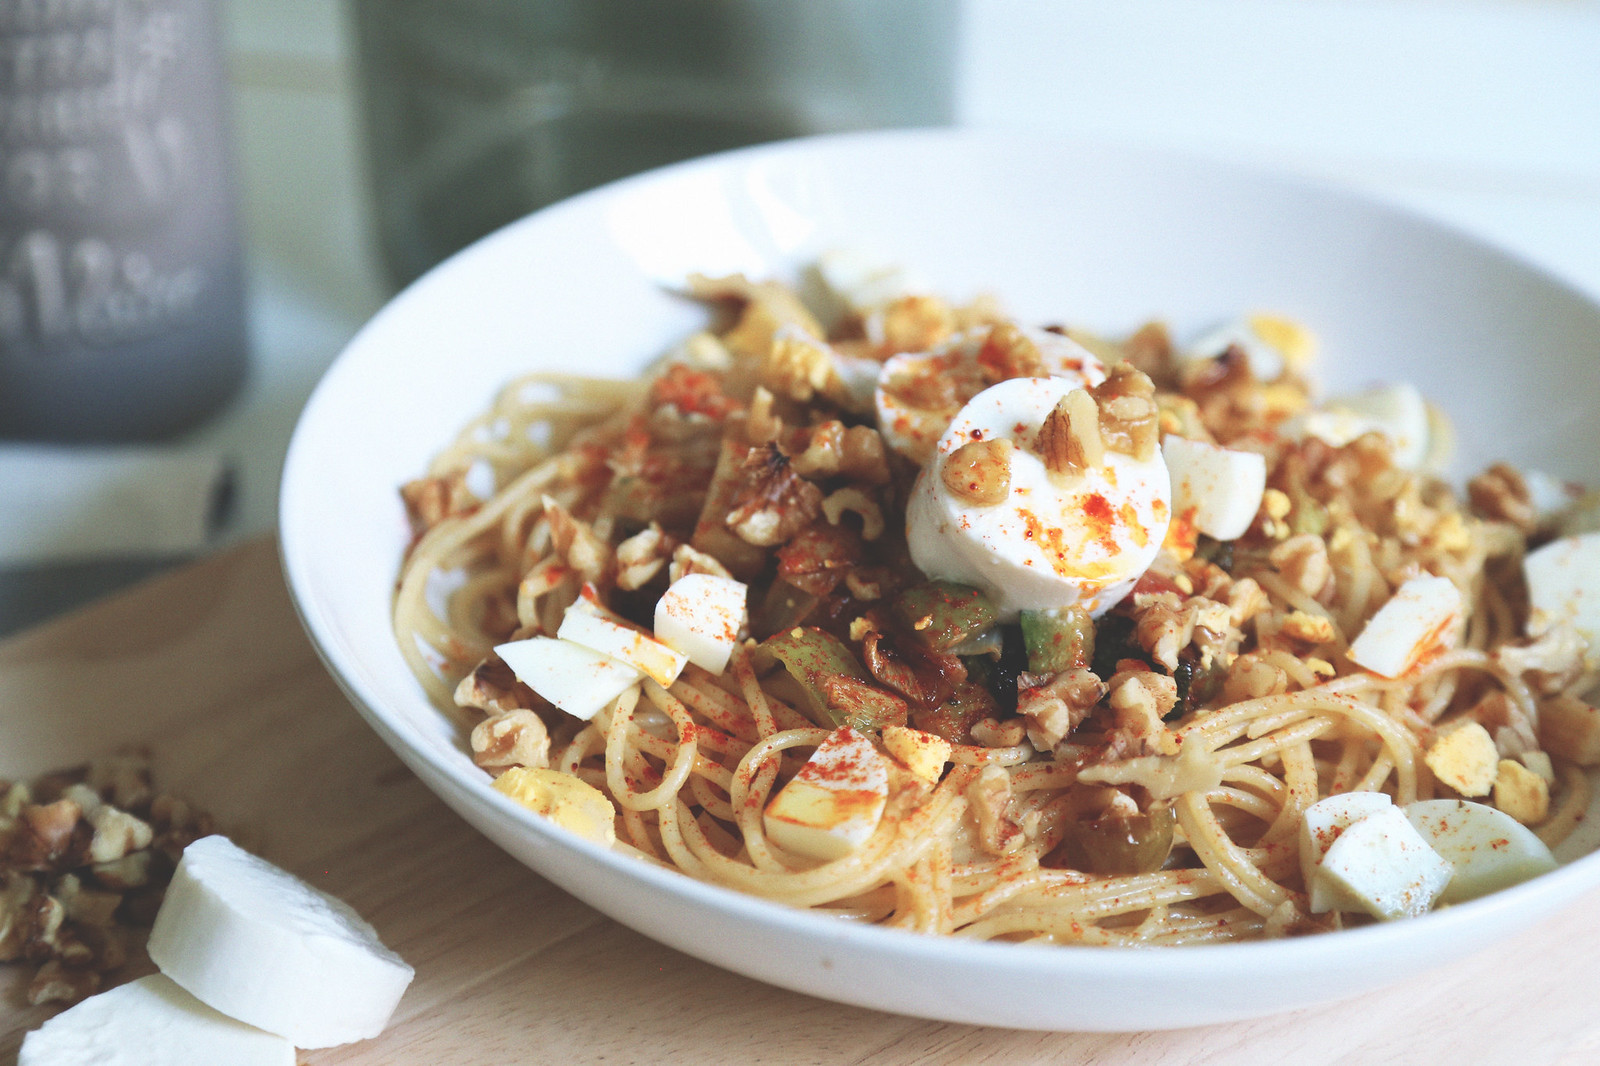  espaguetis verduras - seams for a desire